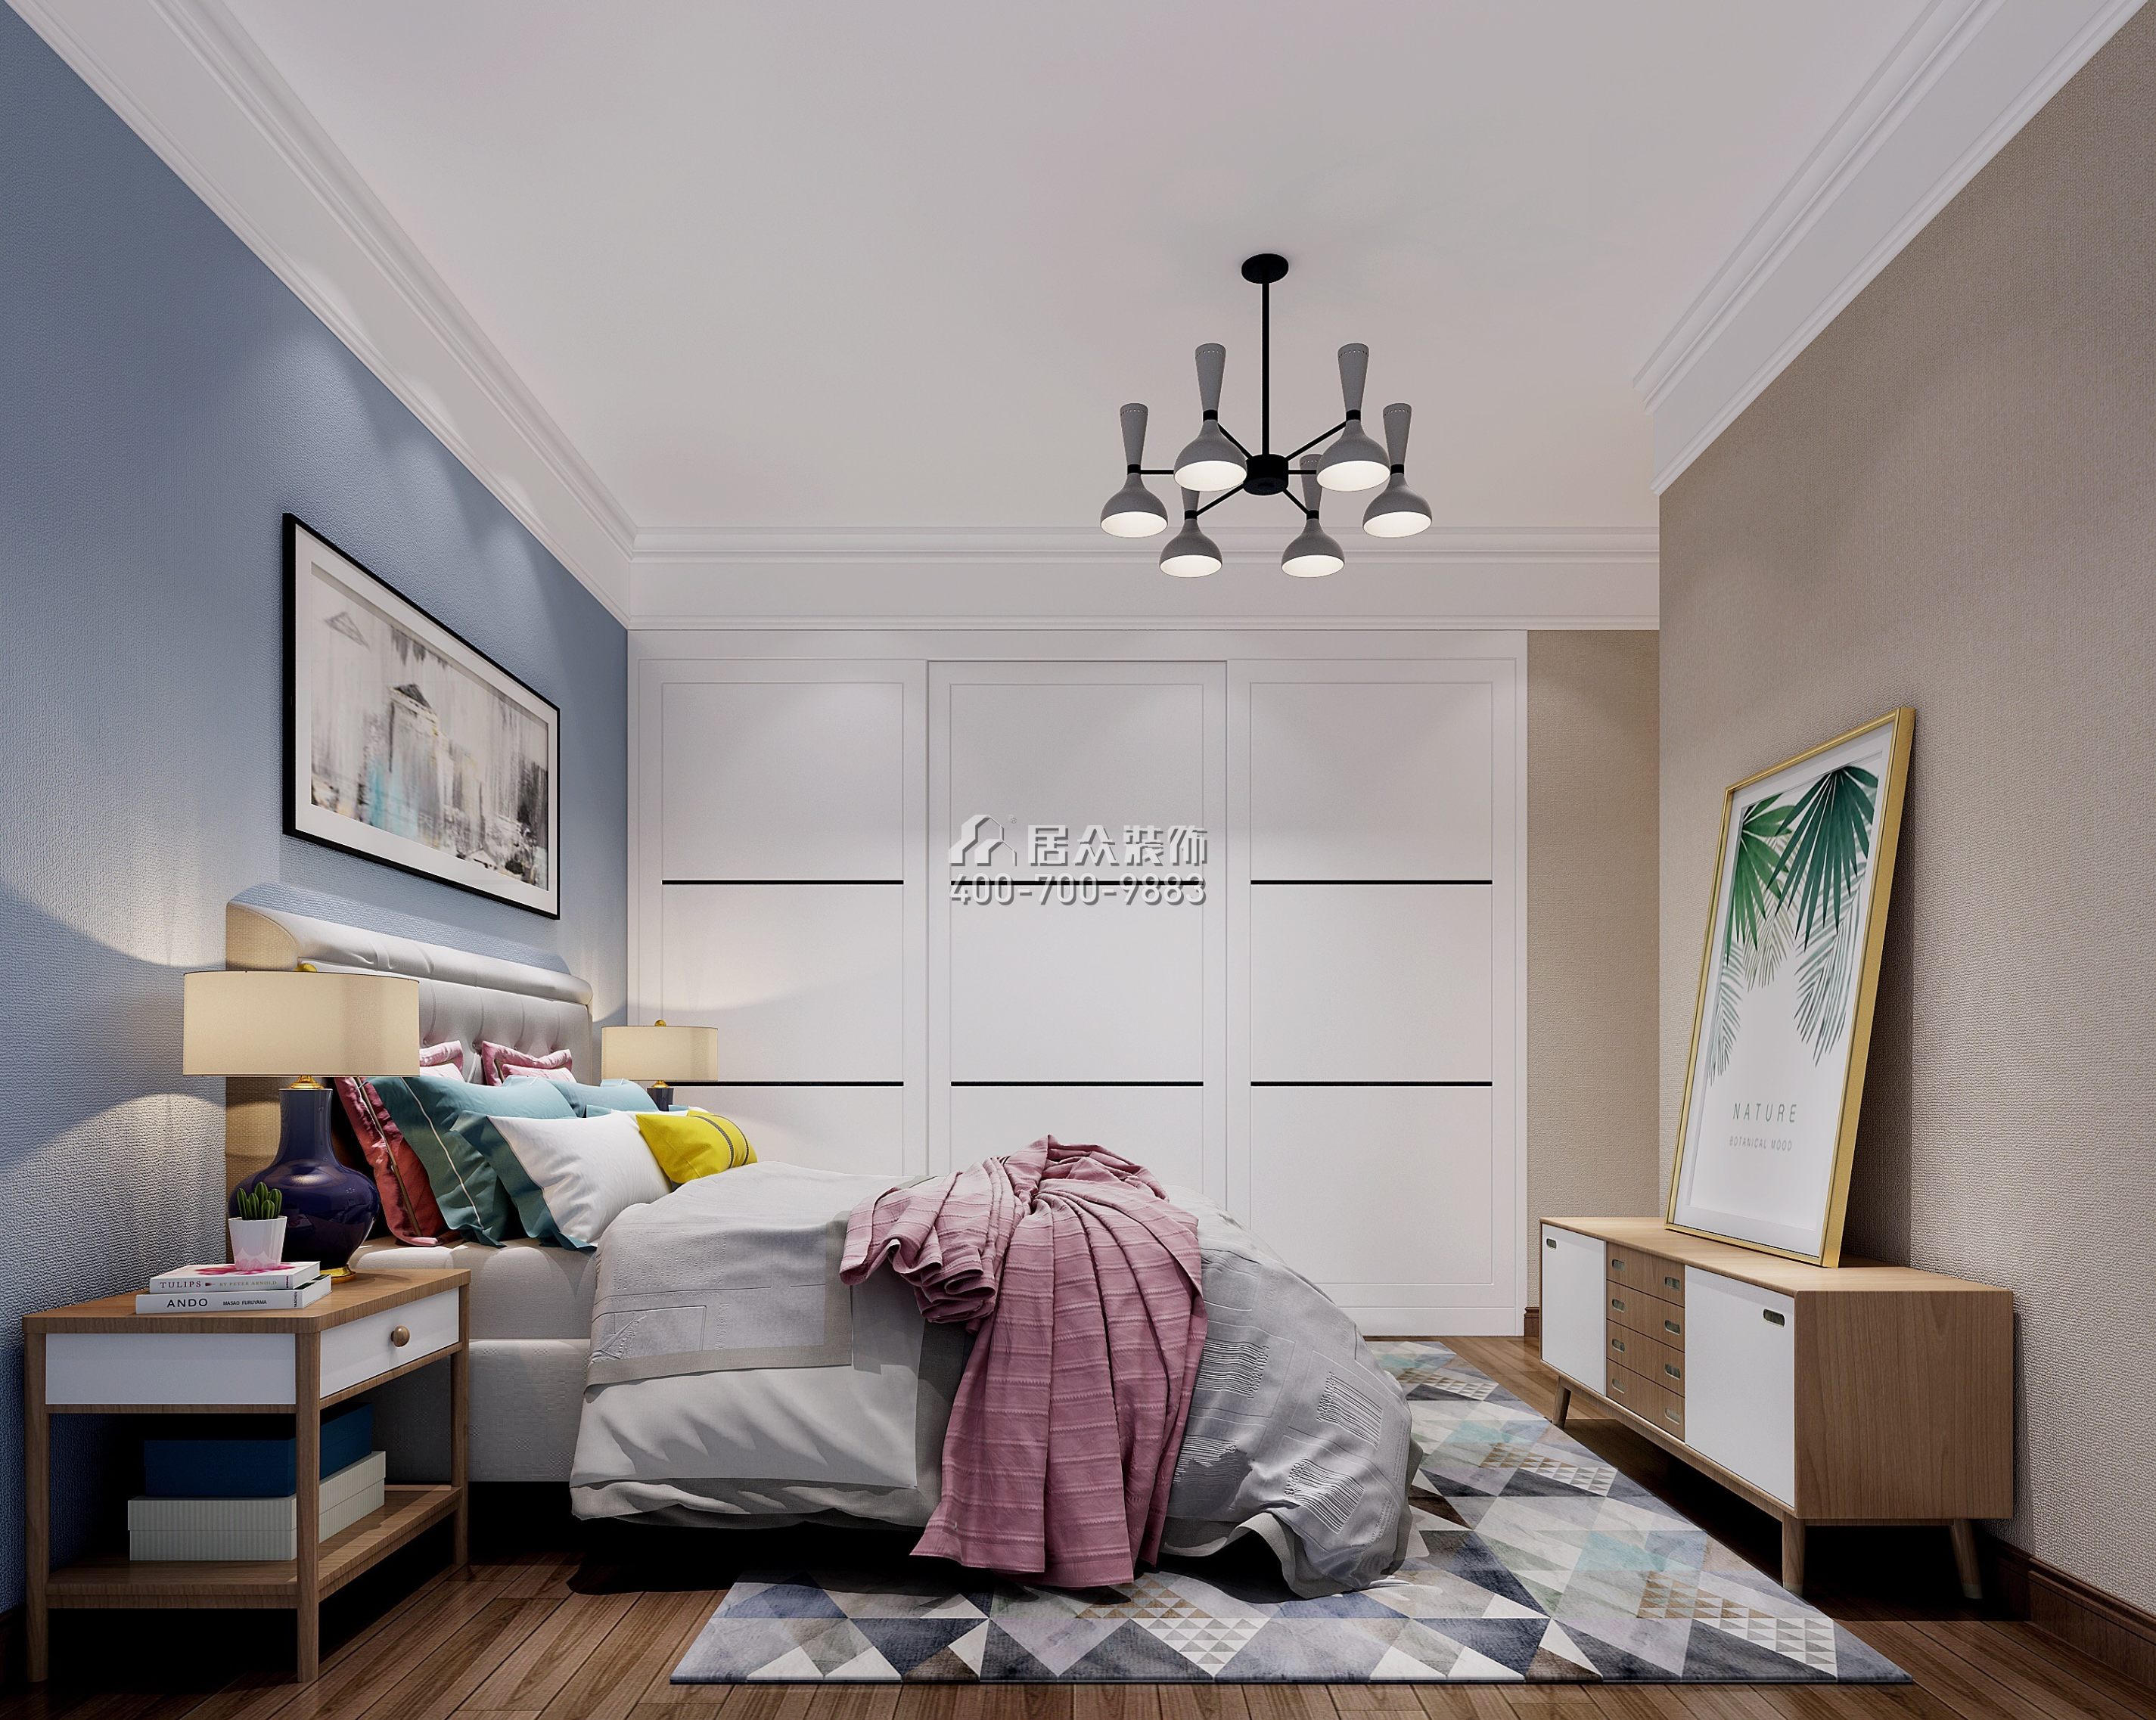 中信红树山85平方米现代简约风格平层户型卧室装修效果图